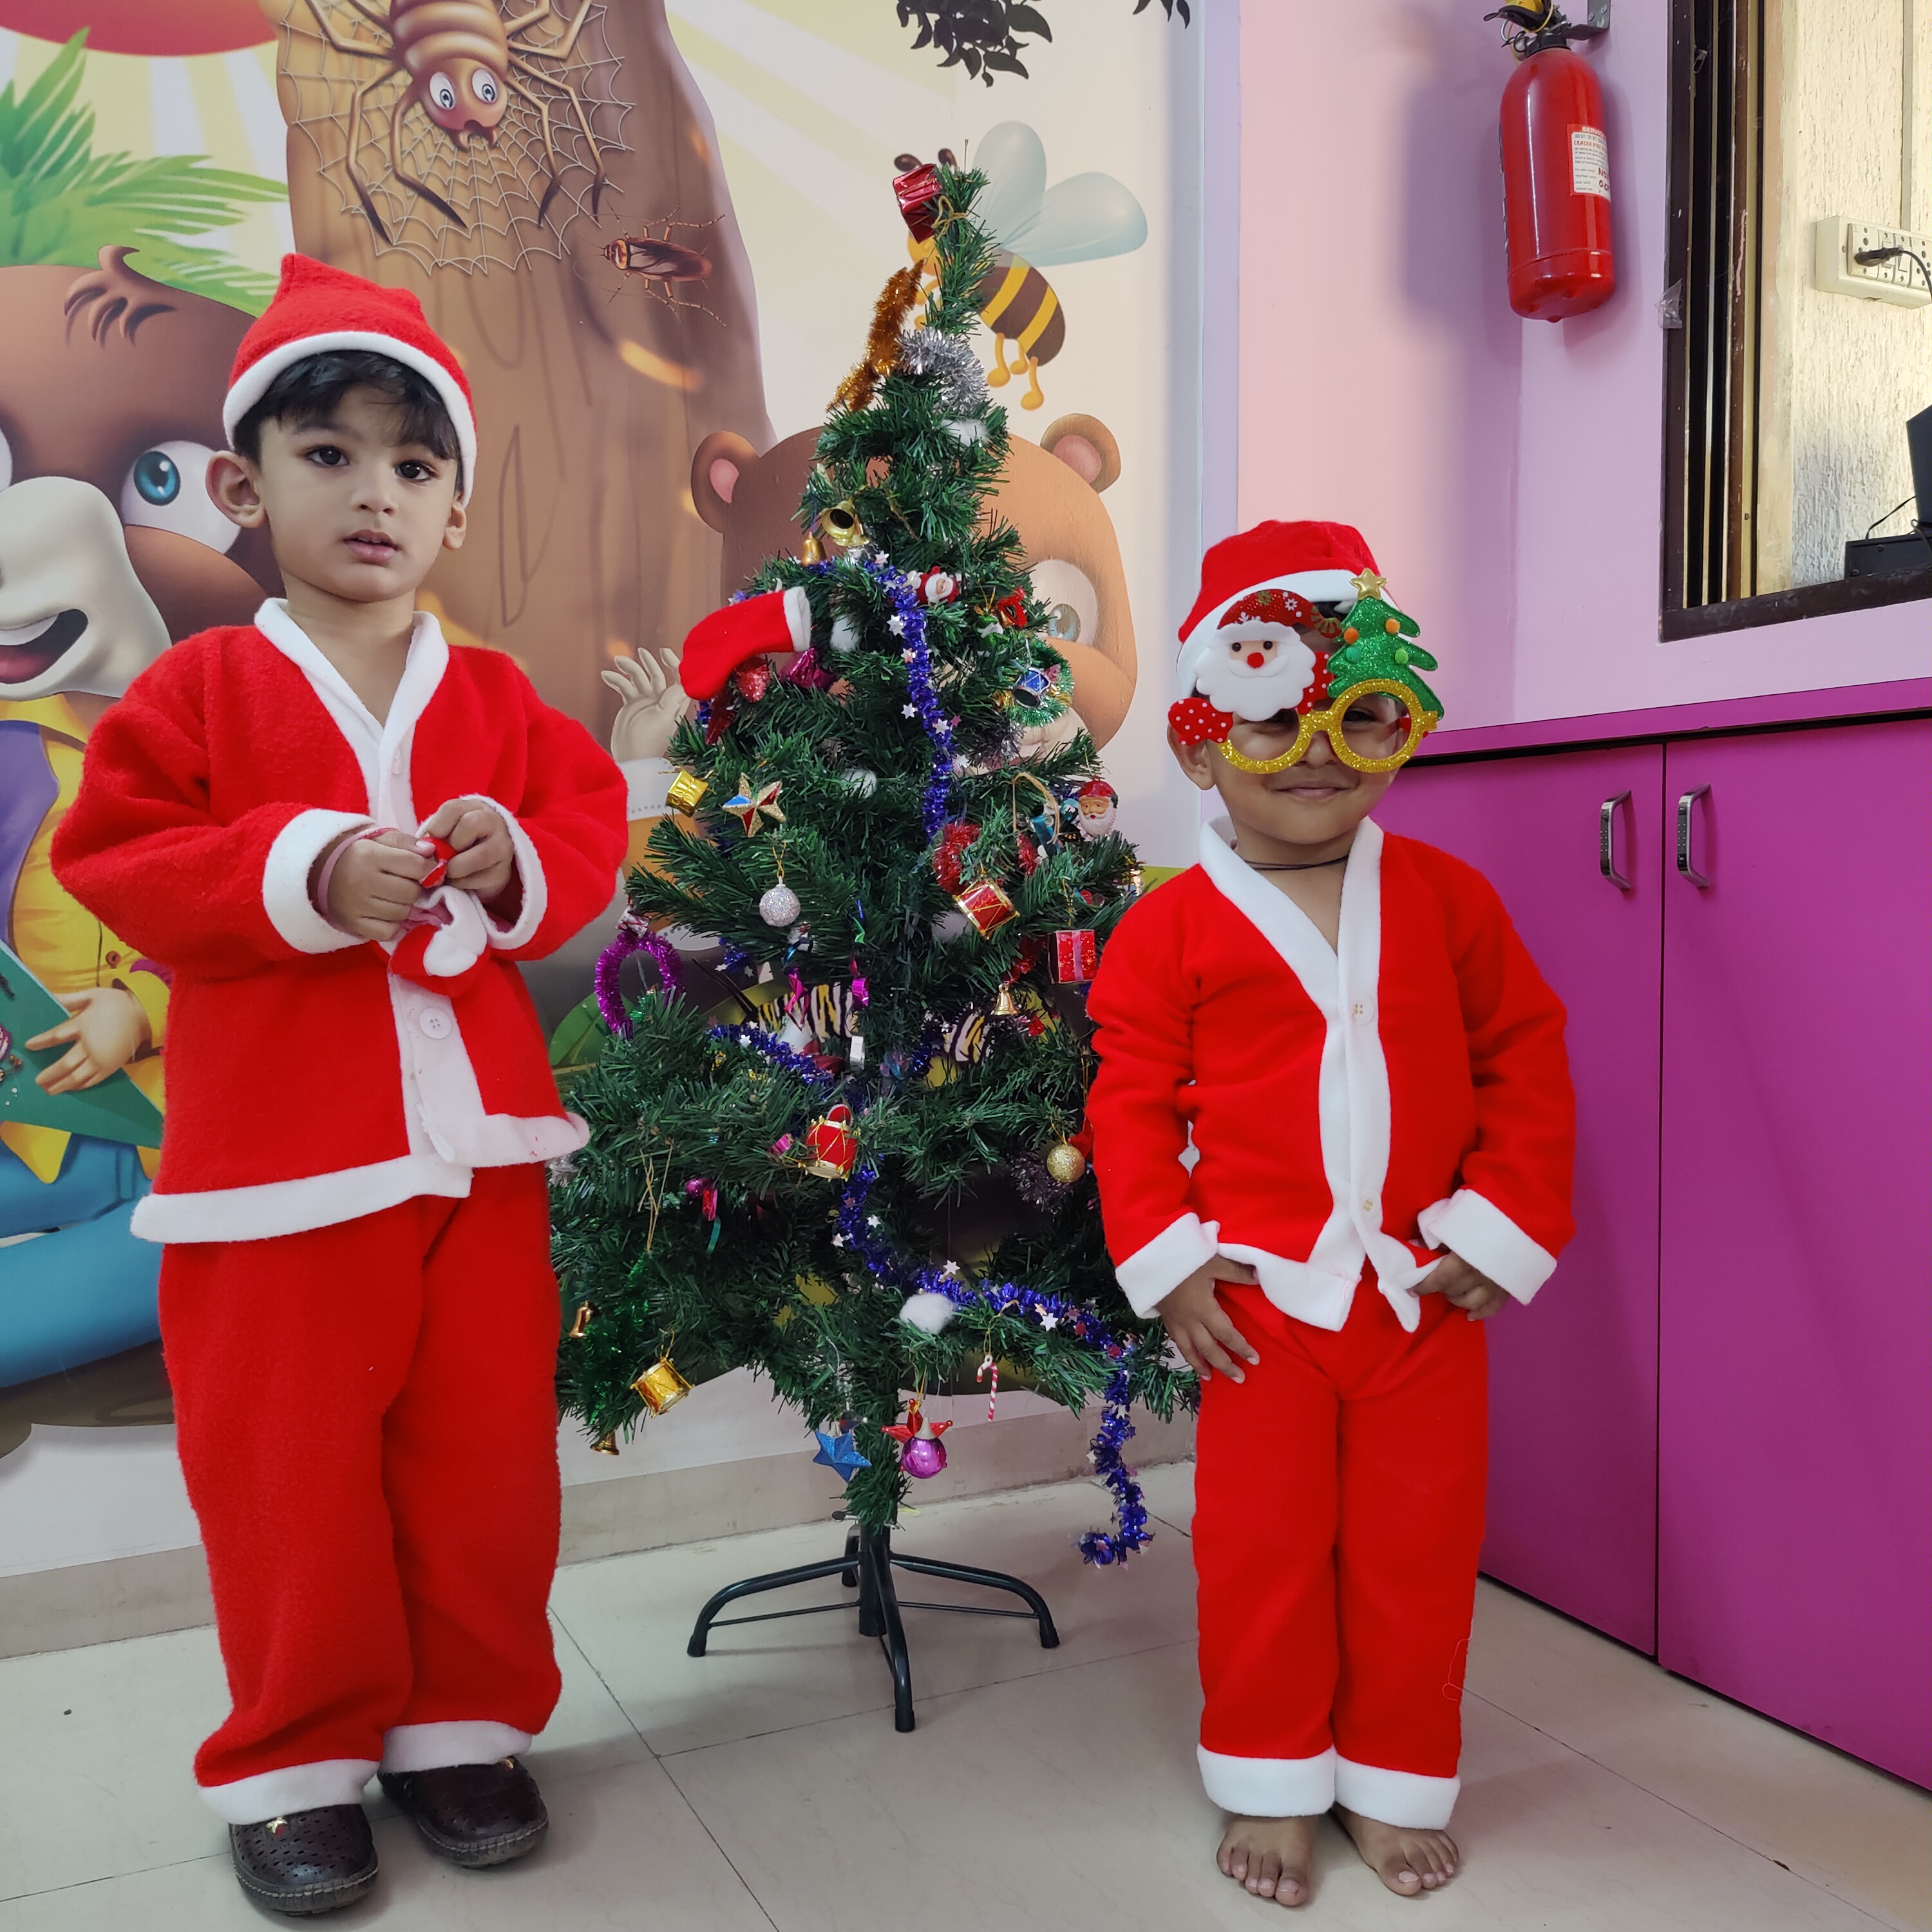 Christmas celebration for kids